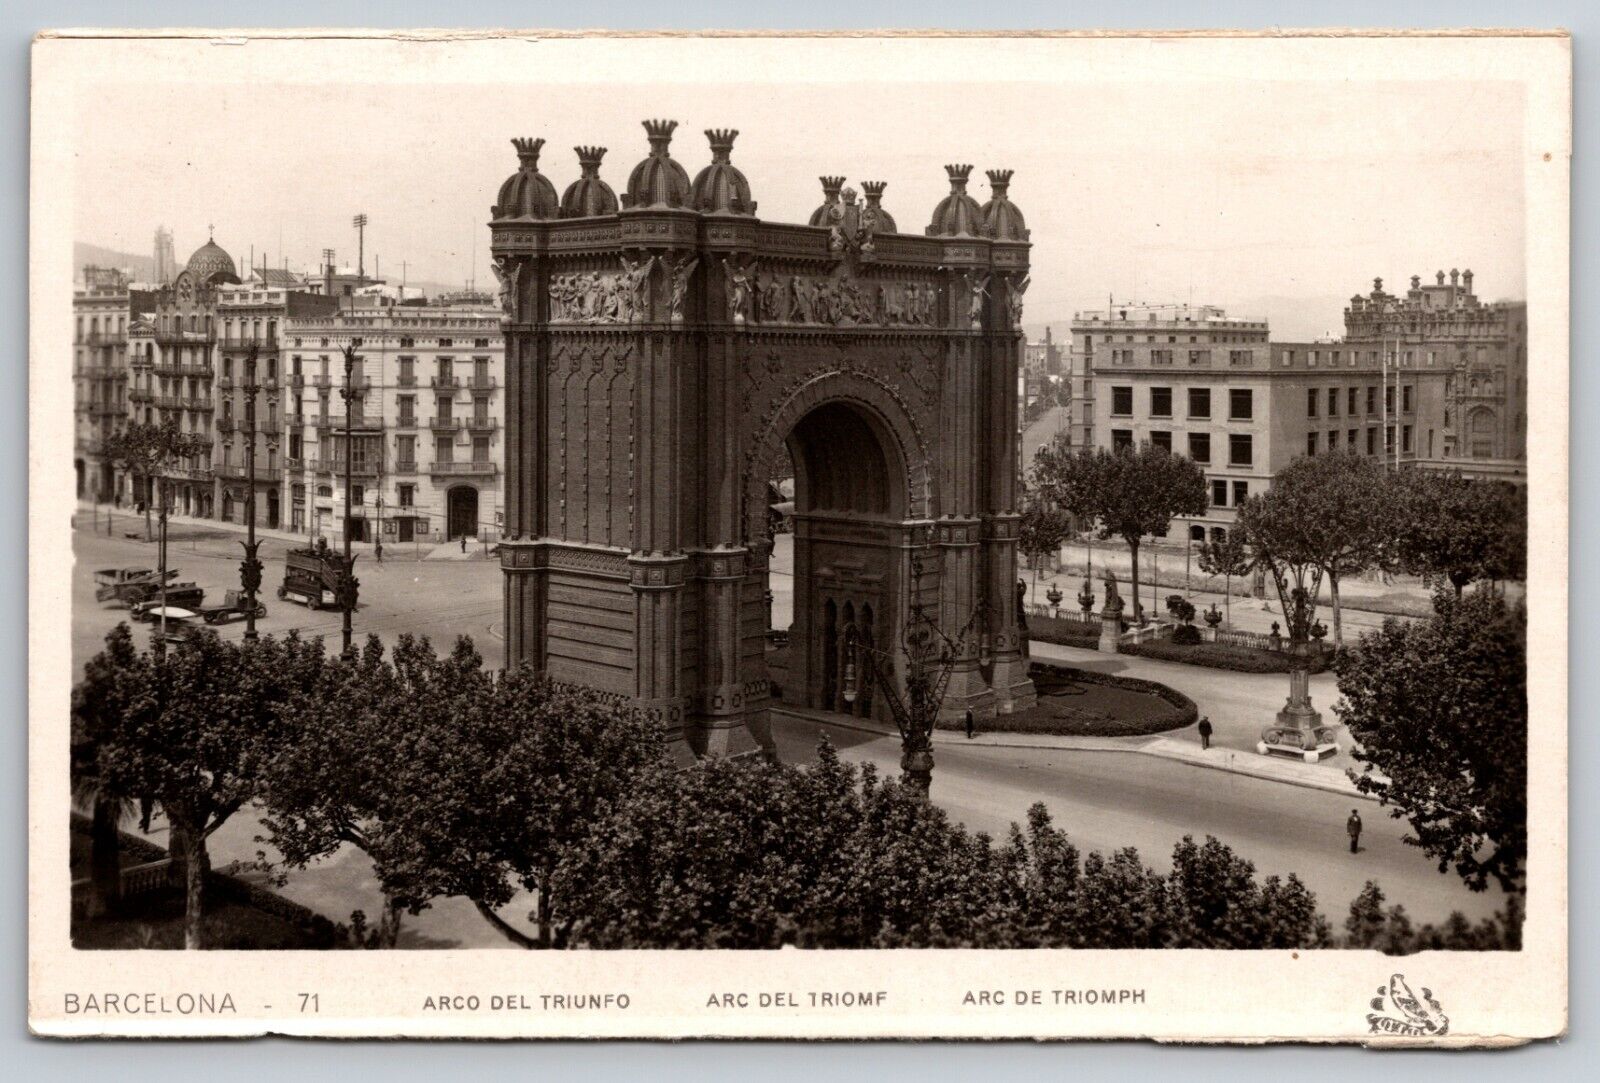 Barcelona Arco Del Triunfo Arc de Triomf Spain Postcard RPPC Real Photo UNPOSTED